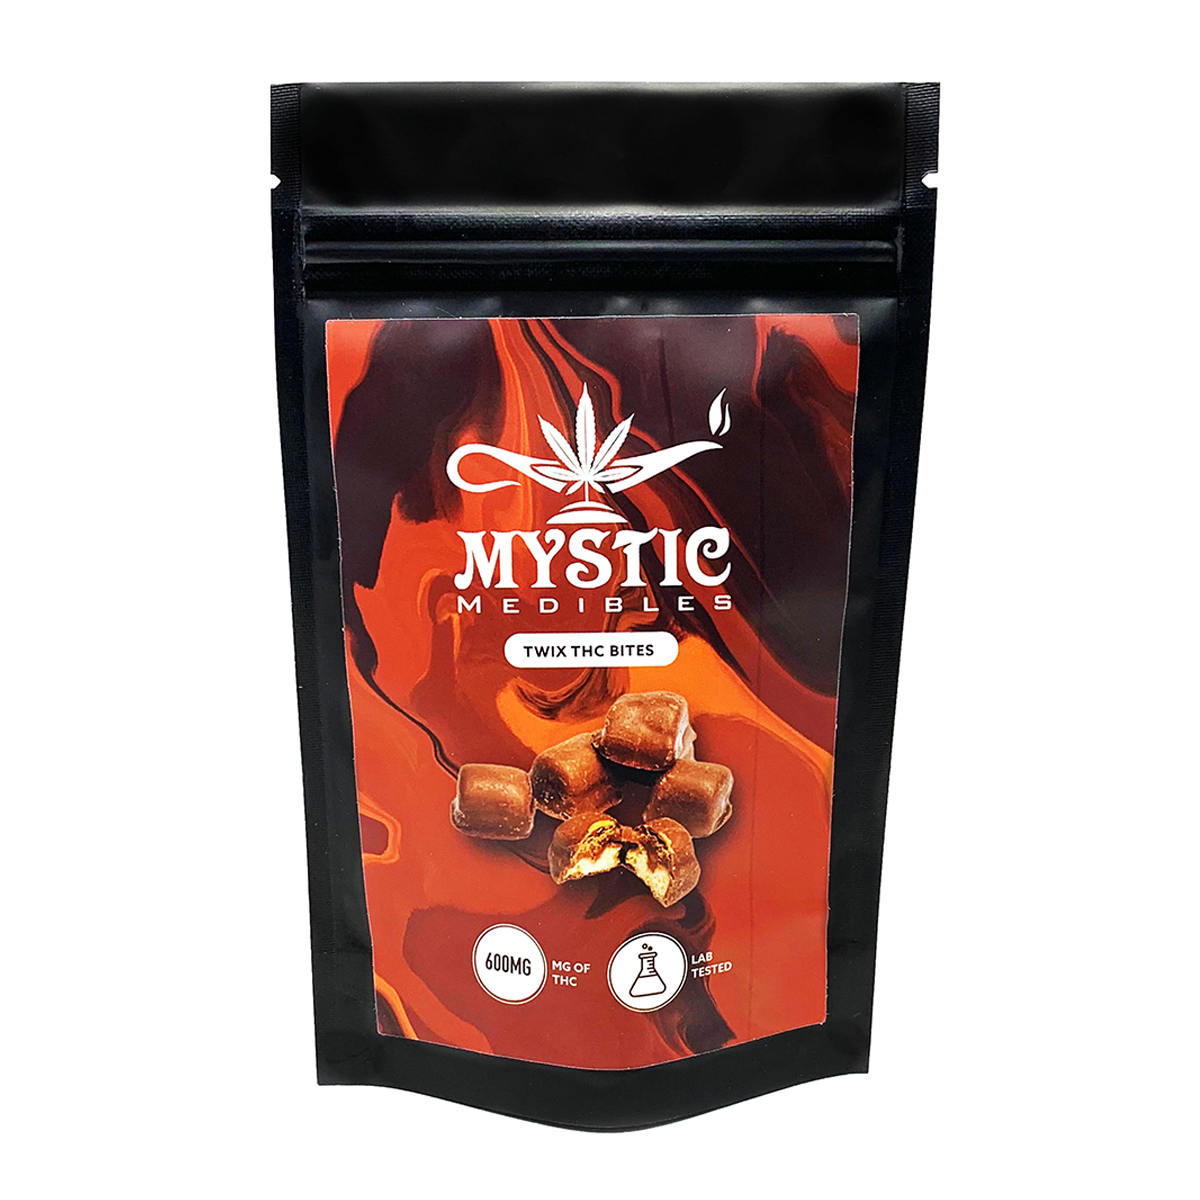 Buy Mystic Medibles - Twix Bites 600mg